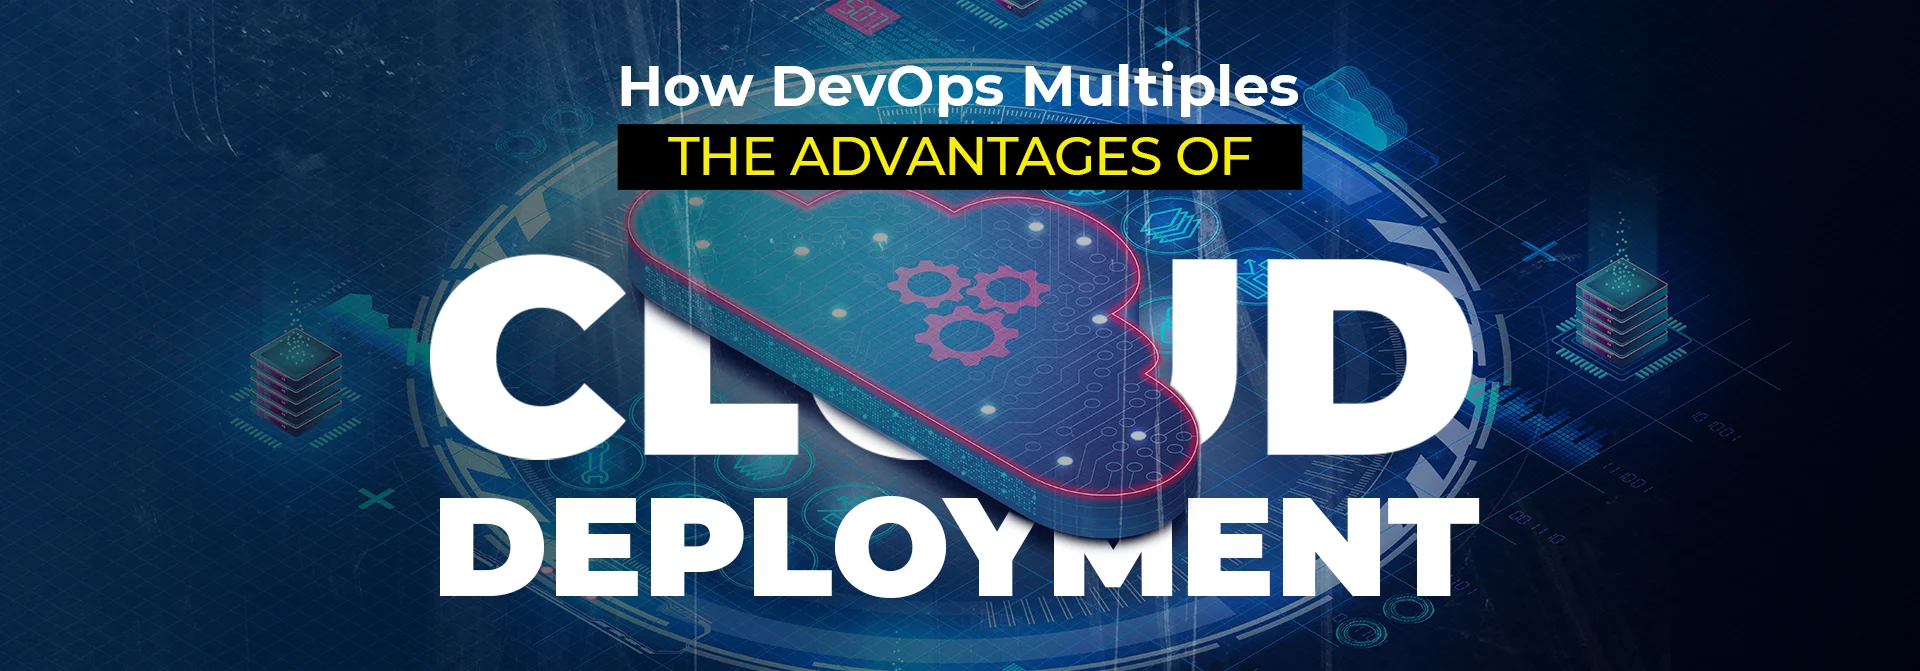 how devops multiples the advantages of cloud deployment